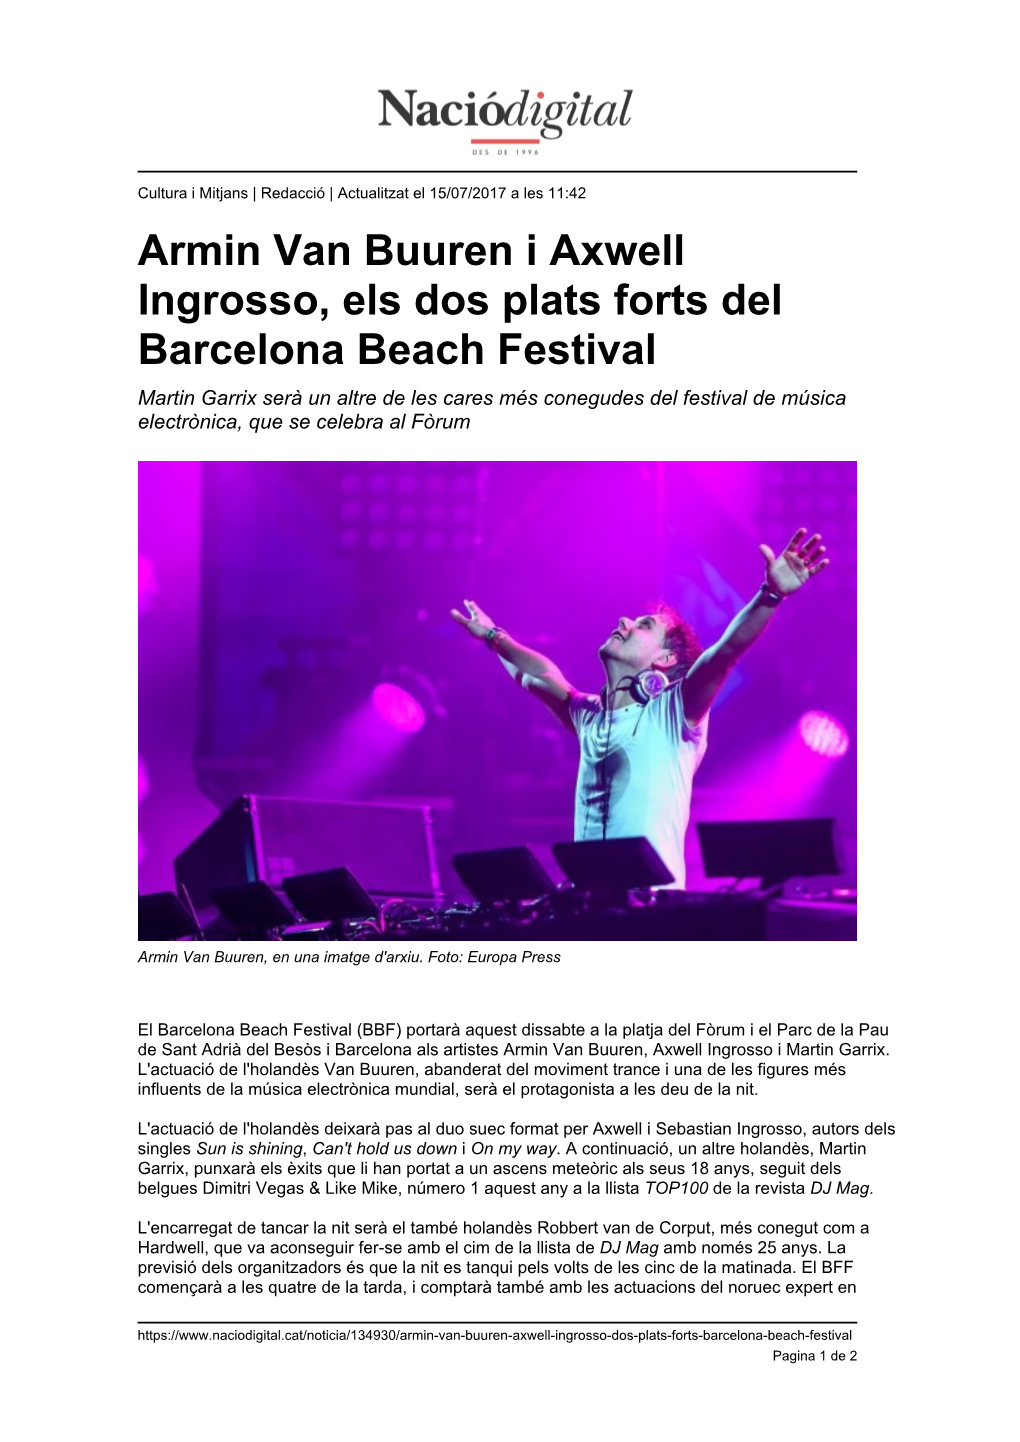 Armin Van Buuren I Axwell Ingrosso, Els Dos Plats Forts Del Barcelona